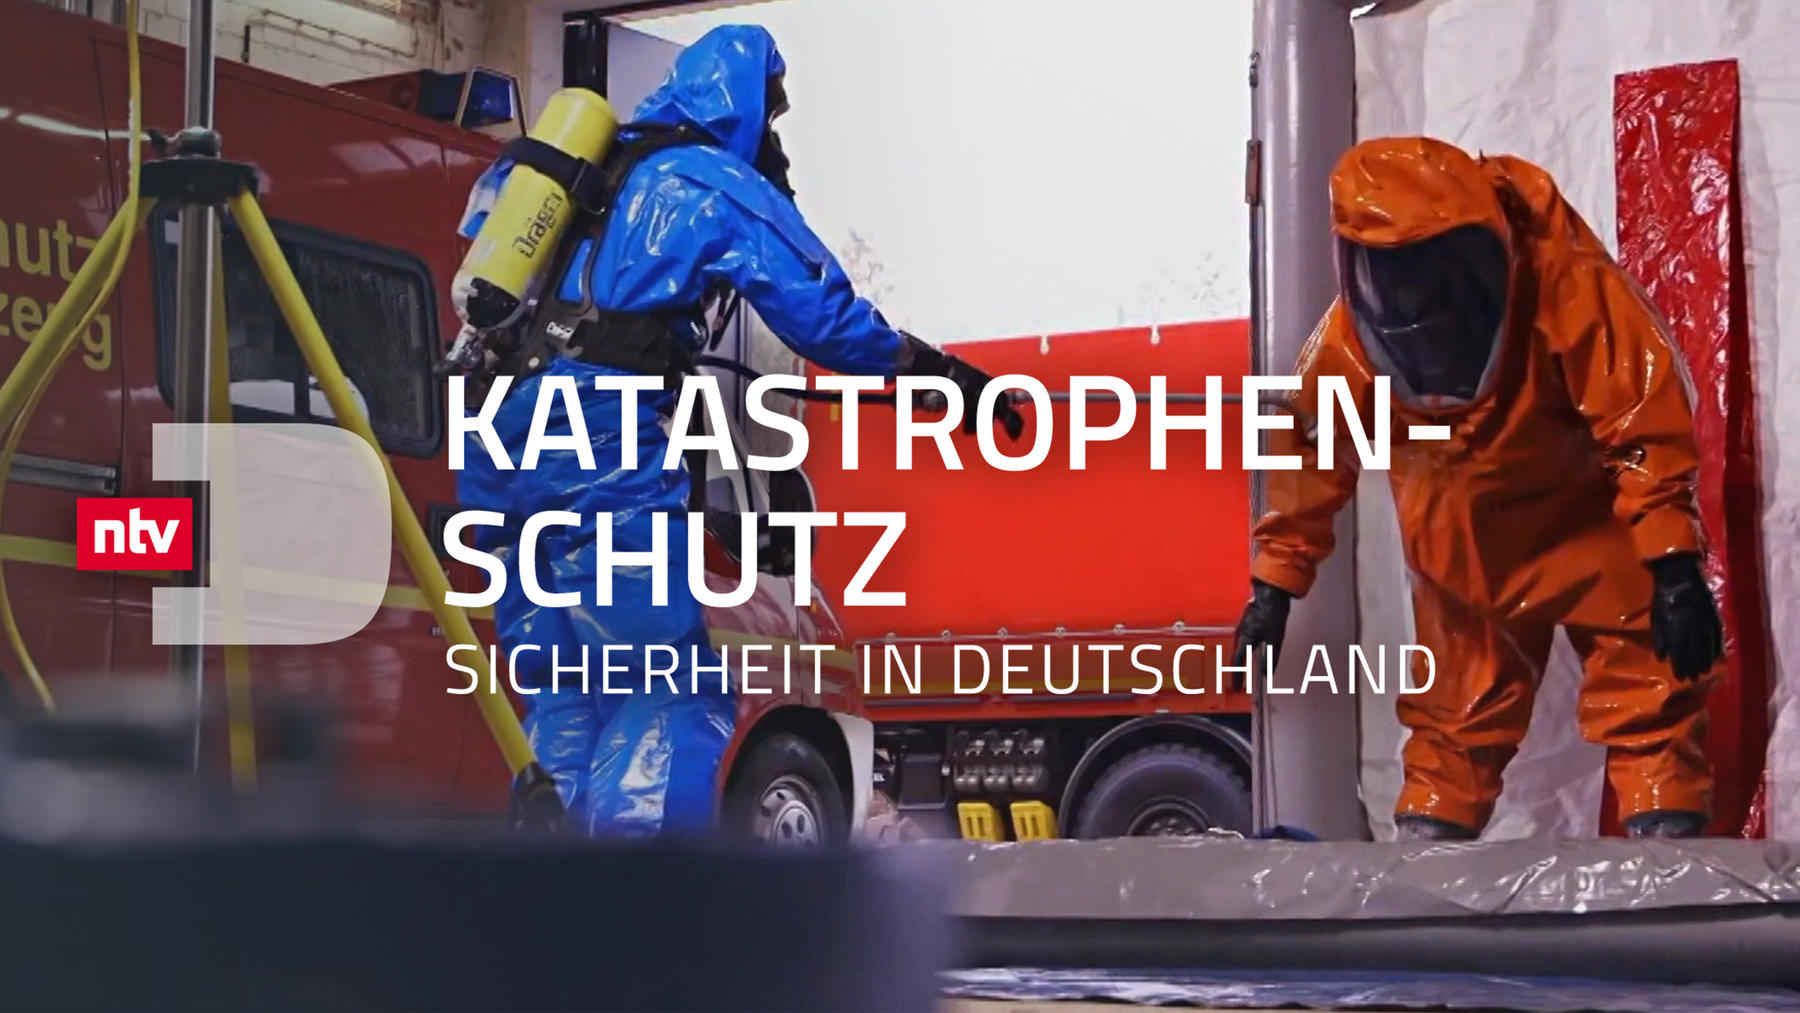 Katastrophenschutz - Sicherheit in Deutschland